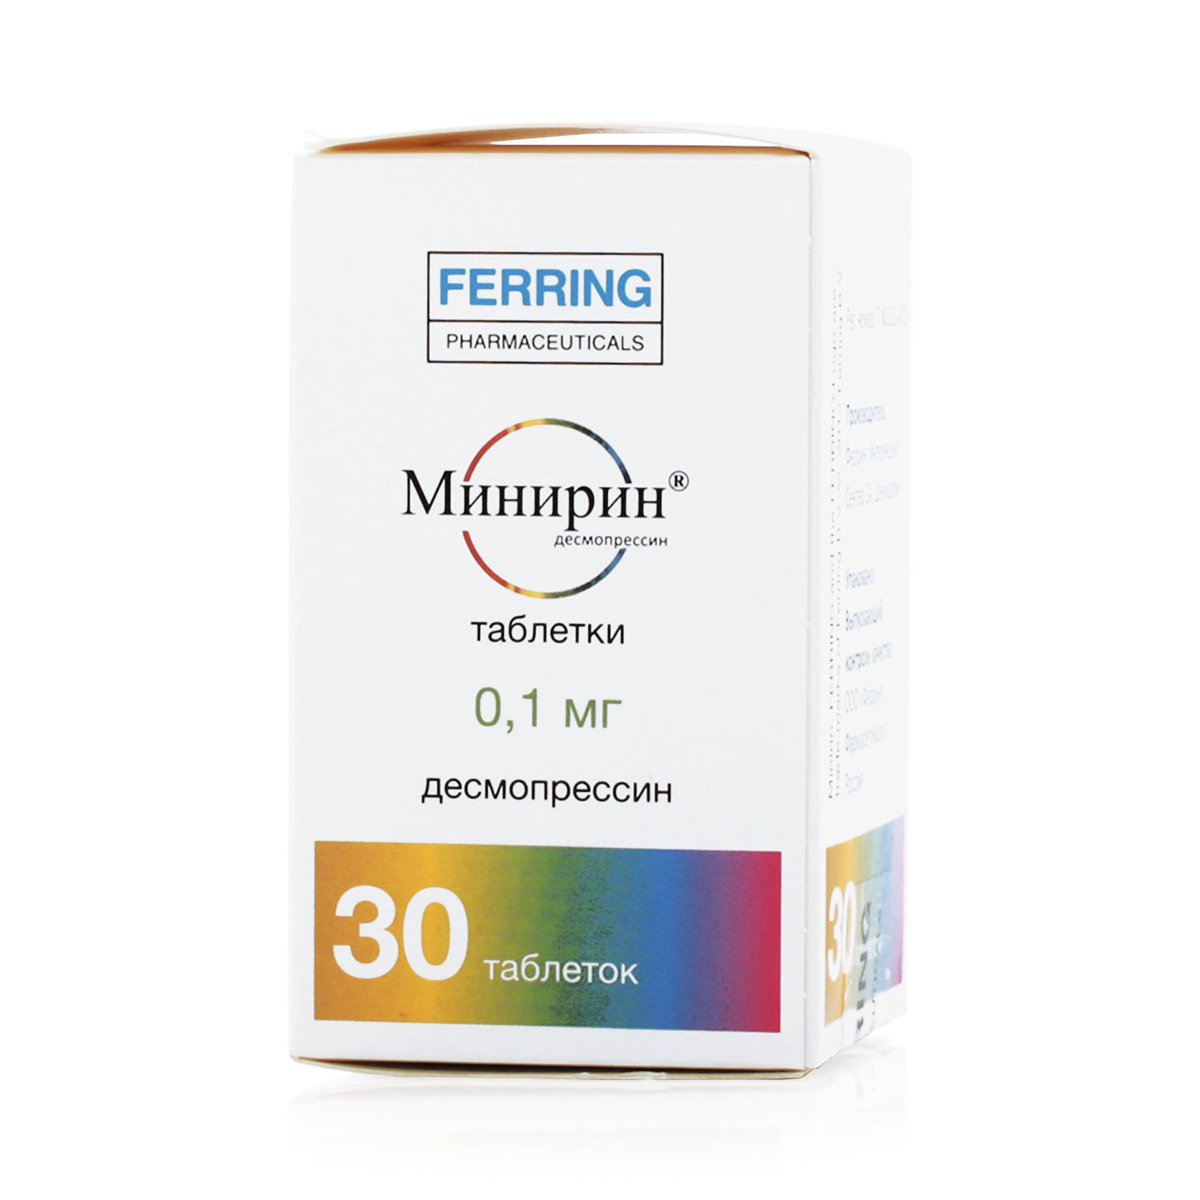 Минирин (таблетки, 30 шт, 0,1 мг) - цена,  онлайн  .